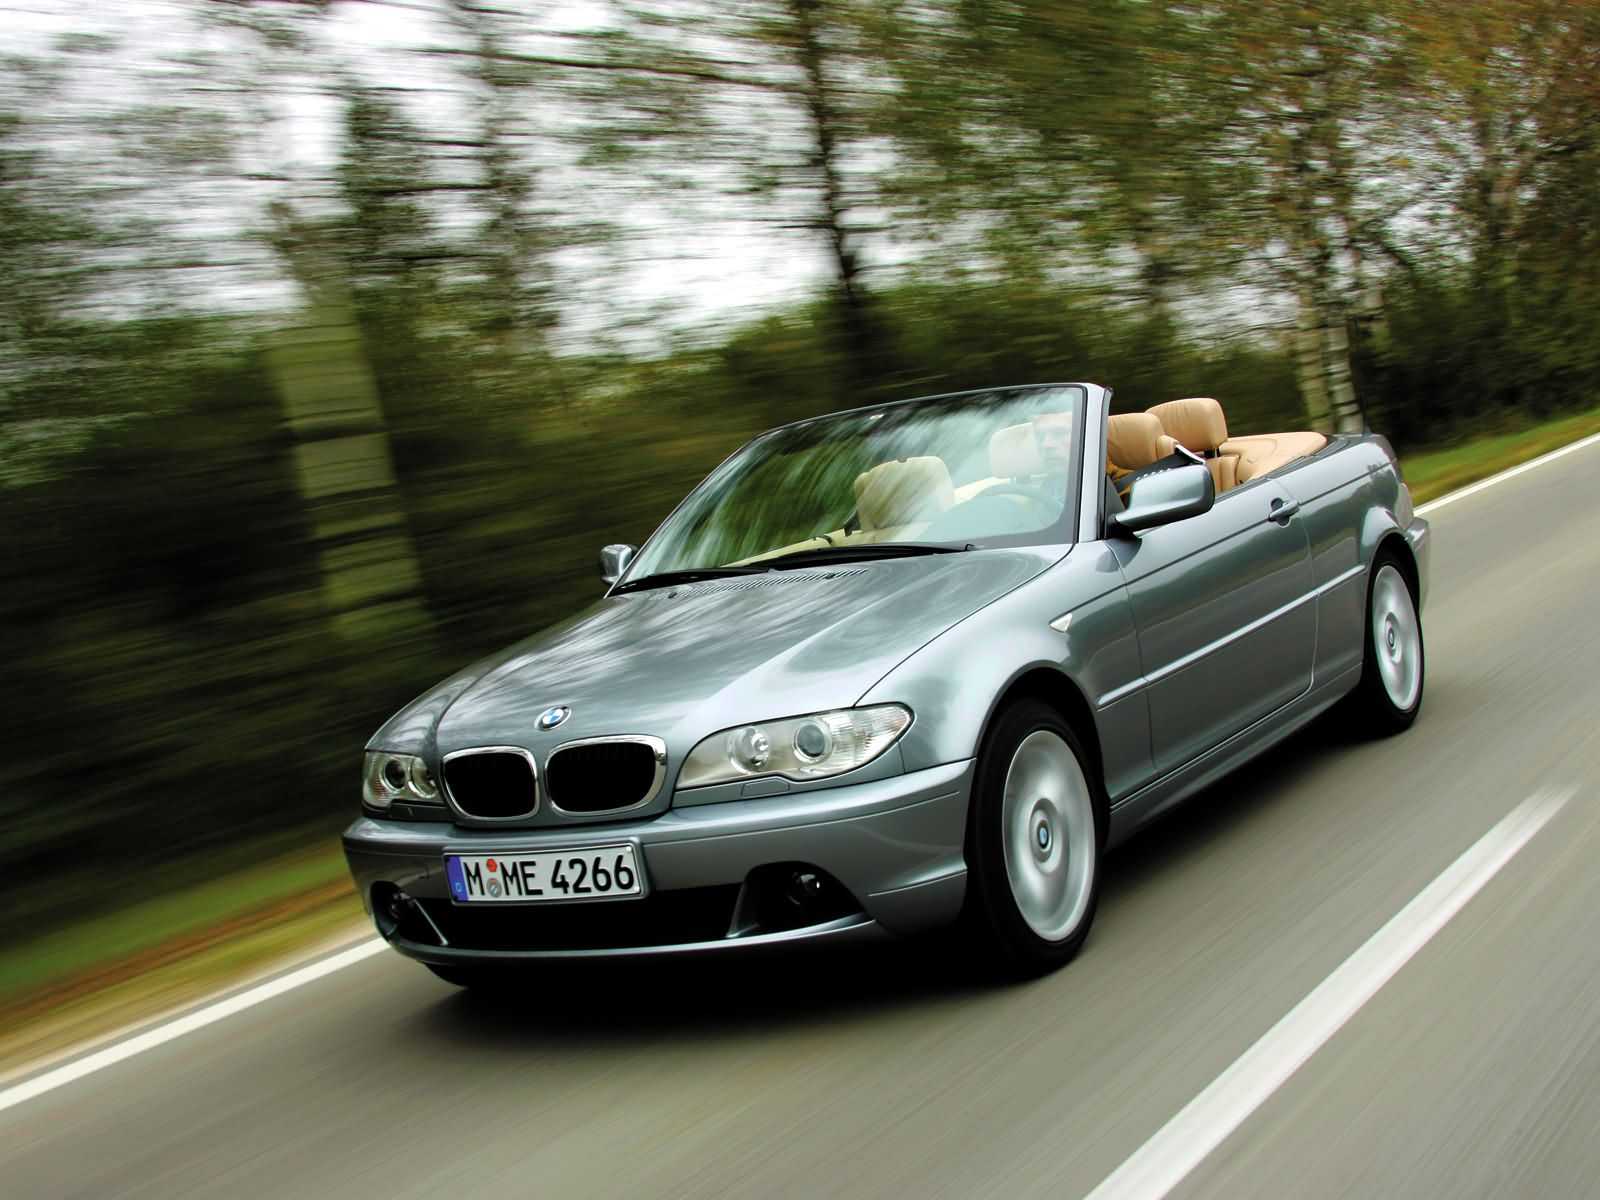 Технические характеристики BMW 320i 2002-2005 в автокаталоге CarExpertru Размеры и масса BMW 320i 2002-2005 Клиренс BMW 3-series Мощность двигателя BMW 320i 2002-2005 Расход топлива BMW 320i 2002-2005 Максимальная скорость BMW 320i 2002-2005 Подвеска BMW